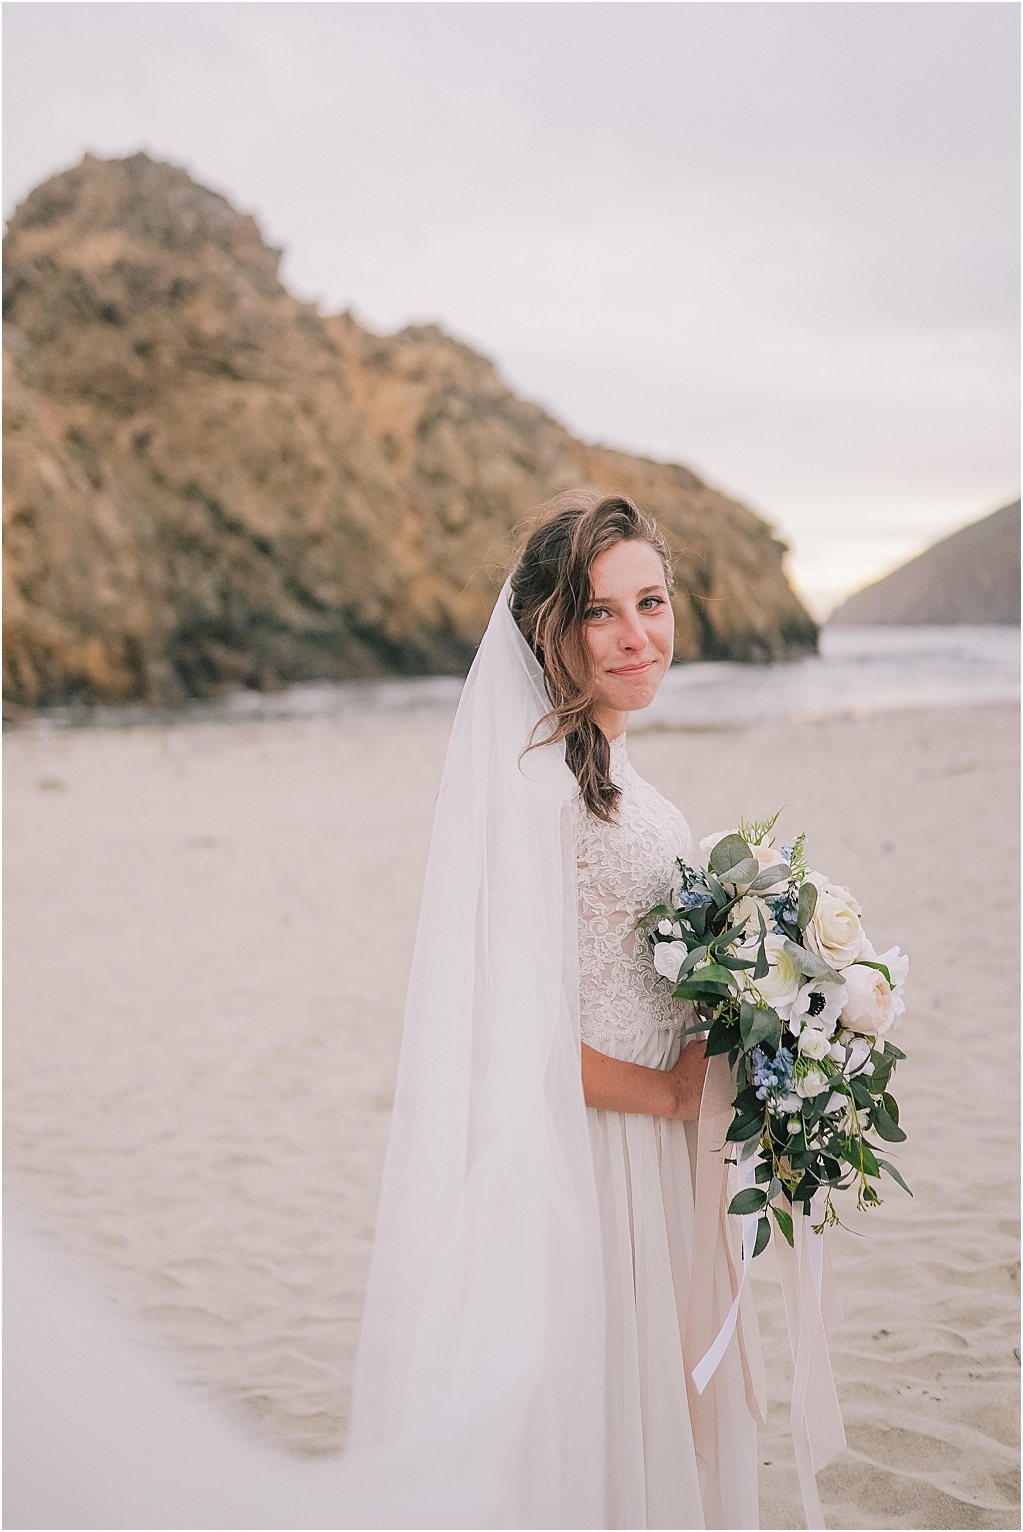 Outer banks big sur elopement photographer bridal portrait with elegant lace dress greenery bouquet